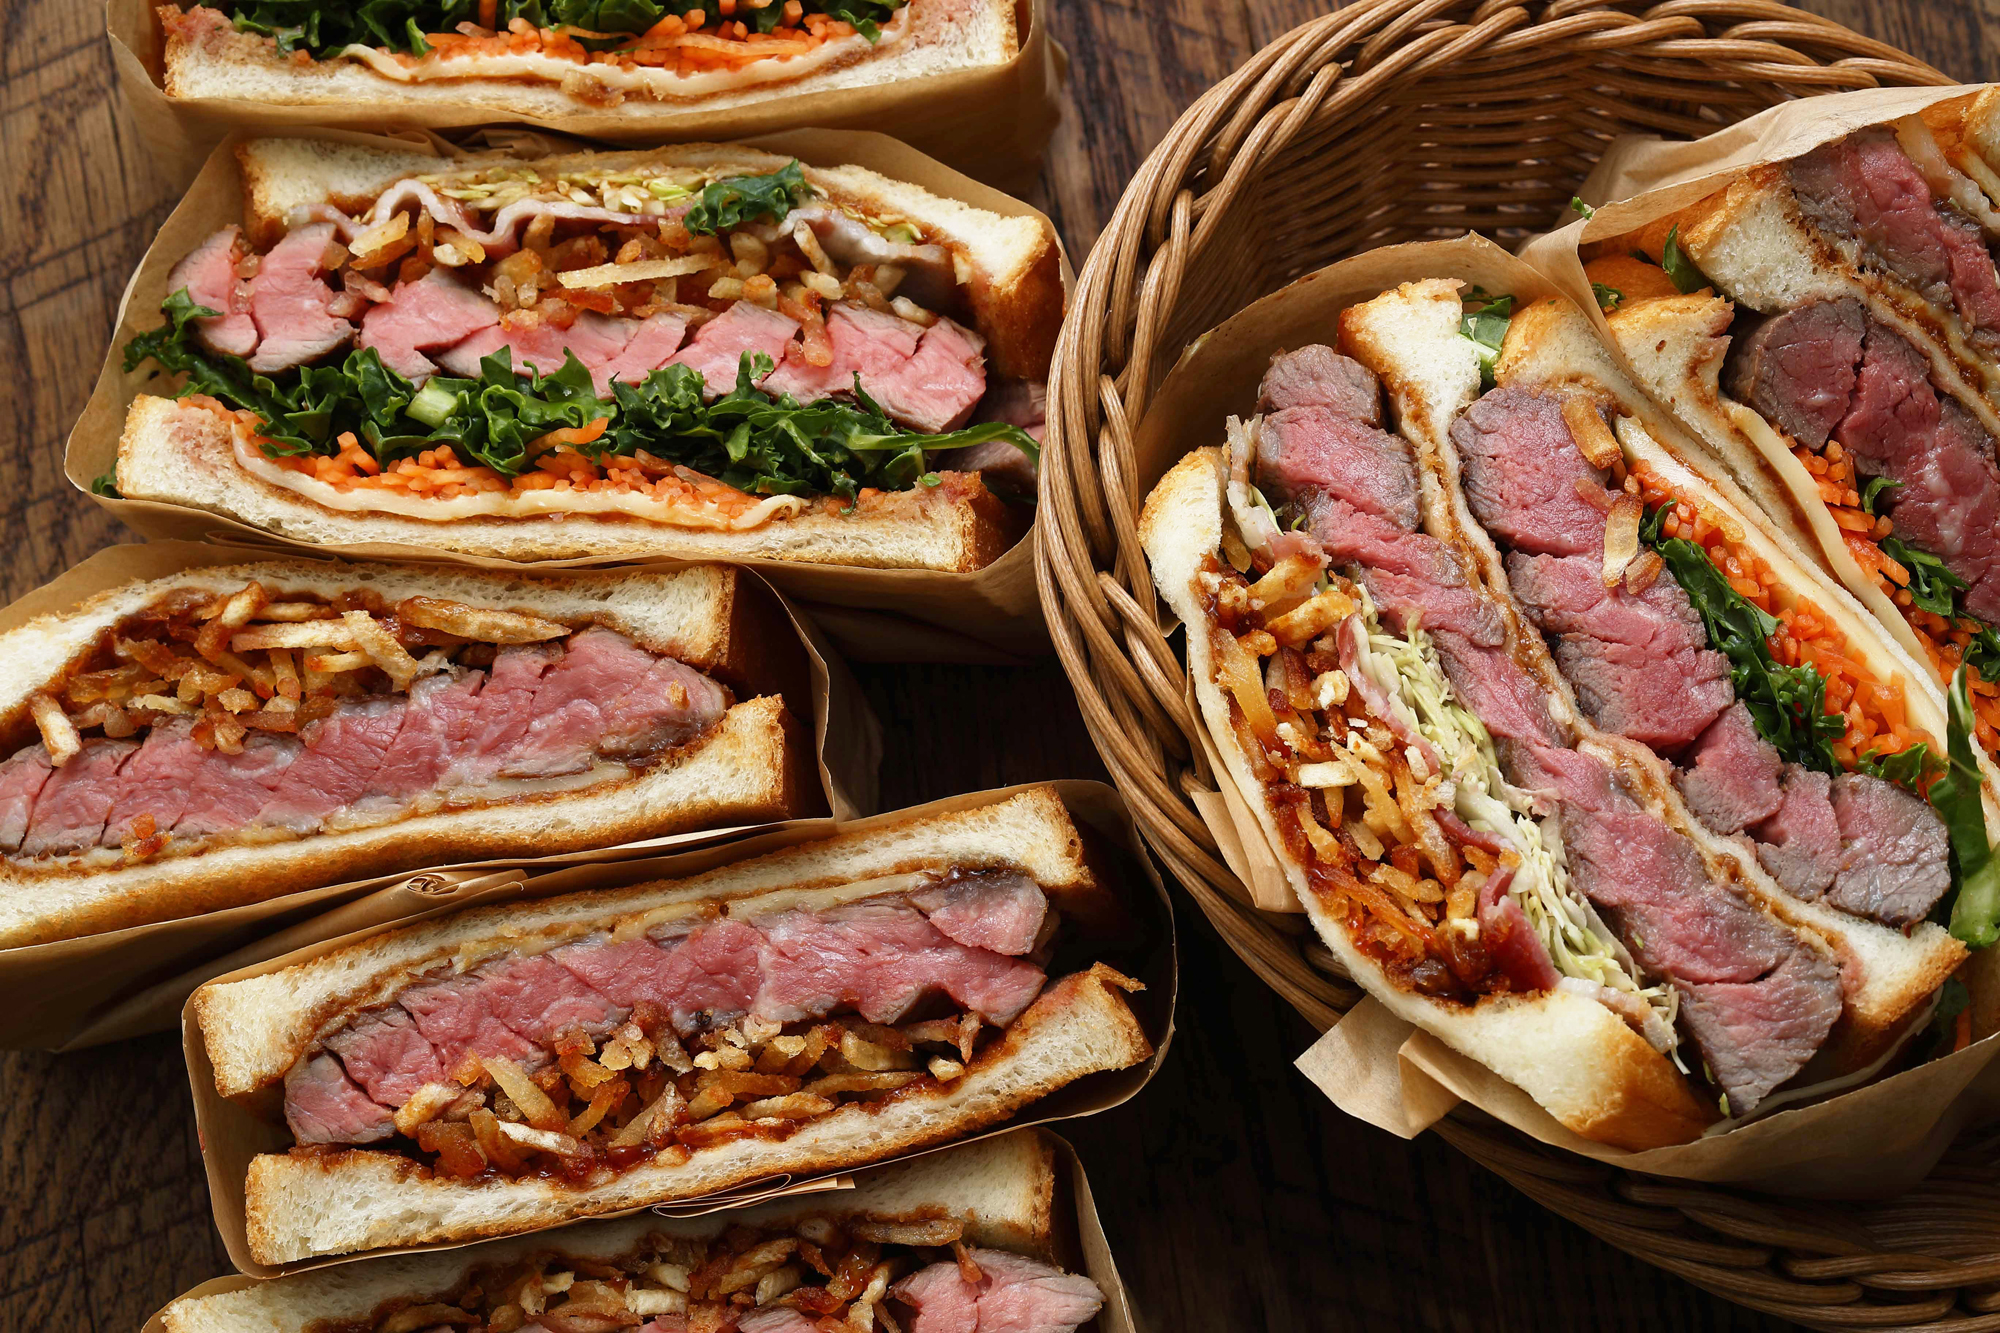 食べ応え満点の厚切り肉サンドが楽しめる新業態 ミートサンドハウス By Texas King Steak ジローレストランシステム株式会社のプレスリリース